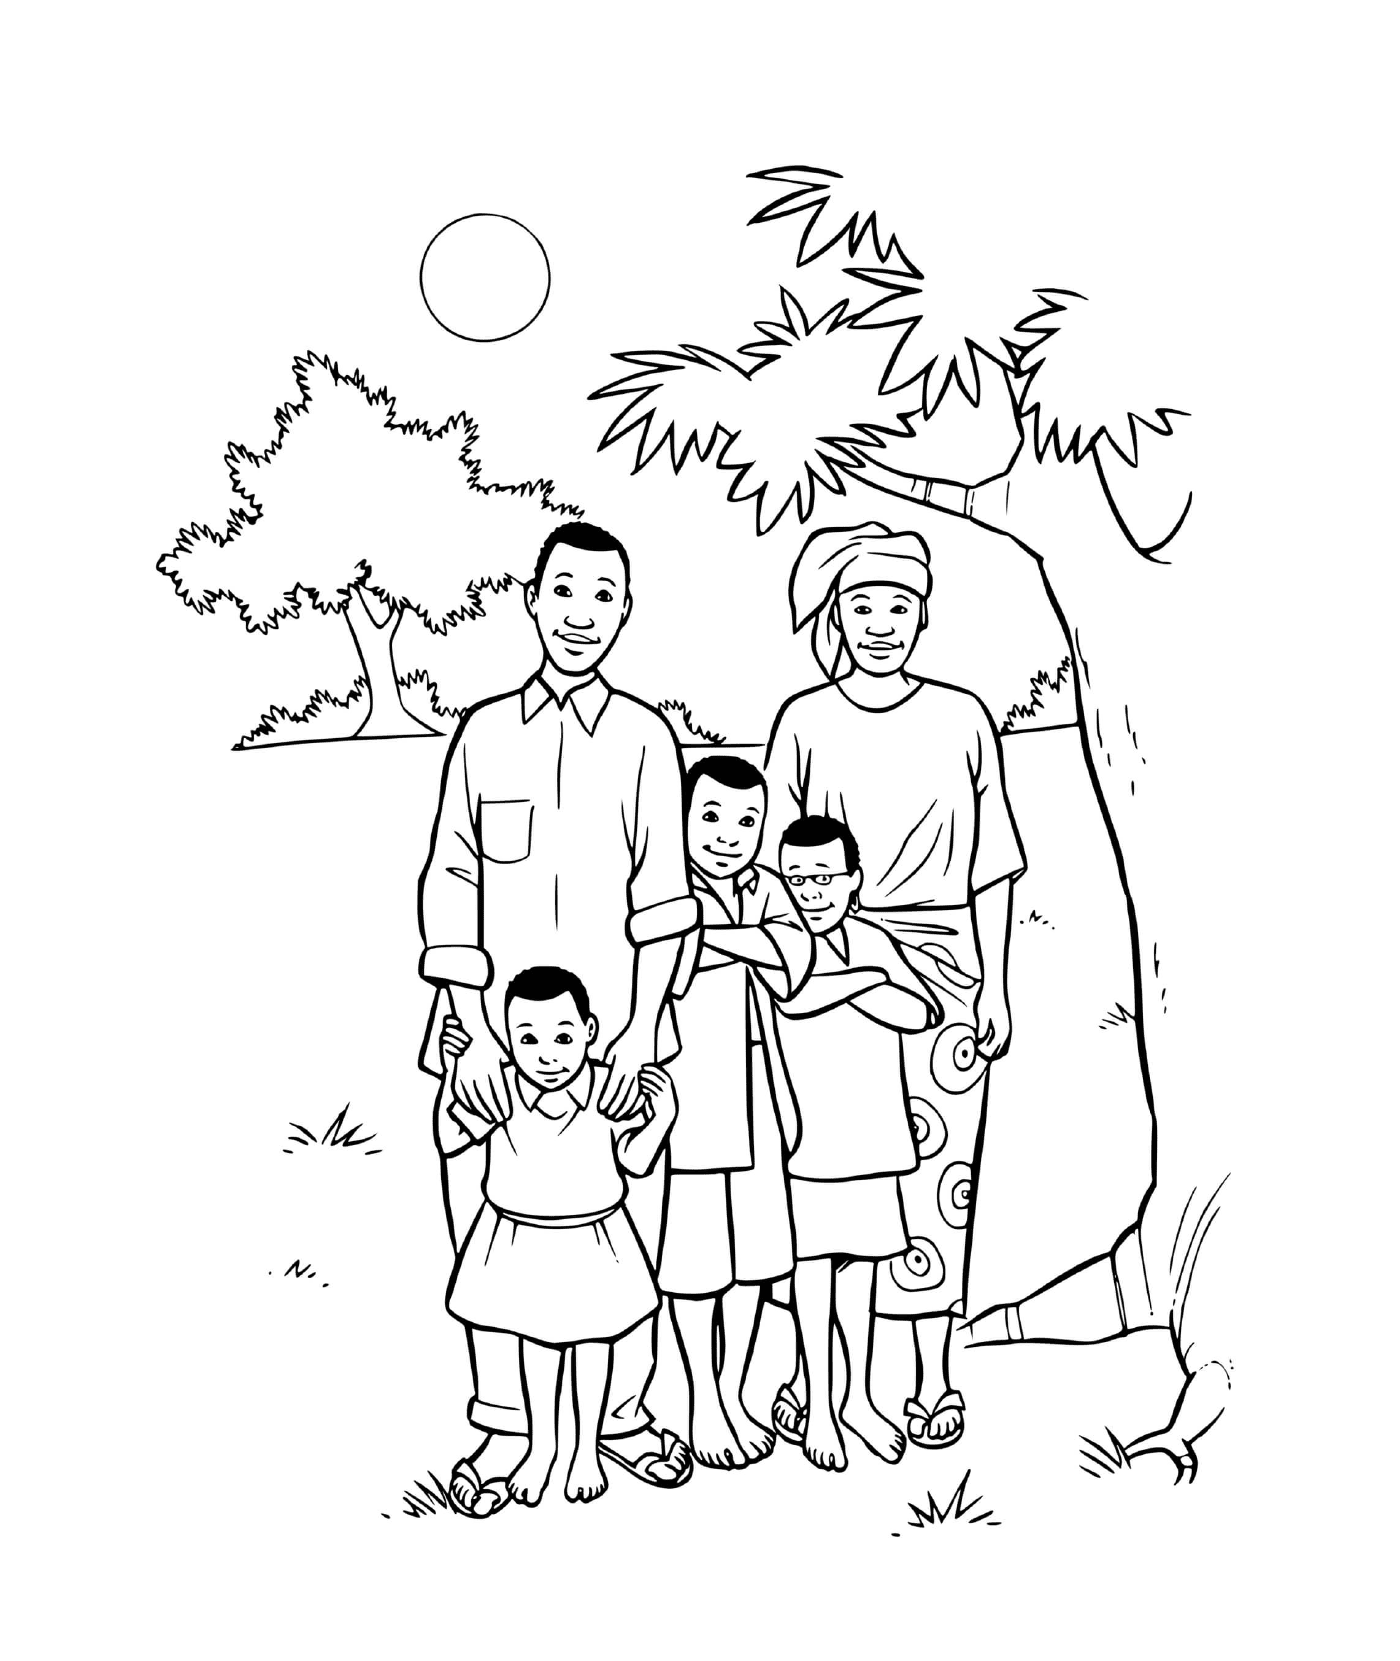  एक अफ्रीकी परिवार जिसके तीन बच्चे हैं एक पेड़ के नीचे 